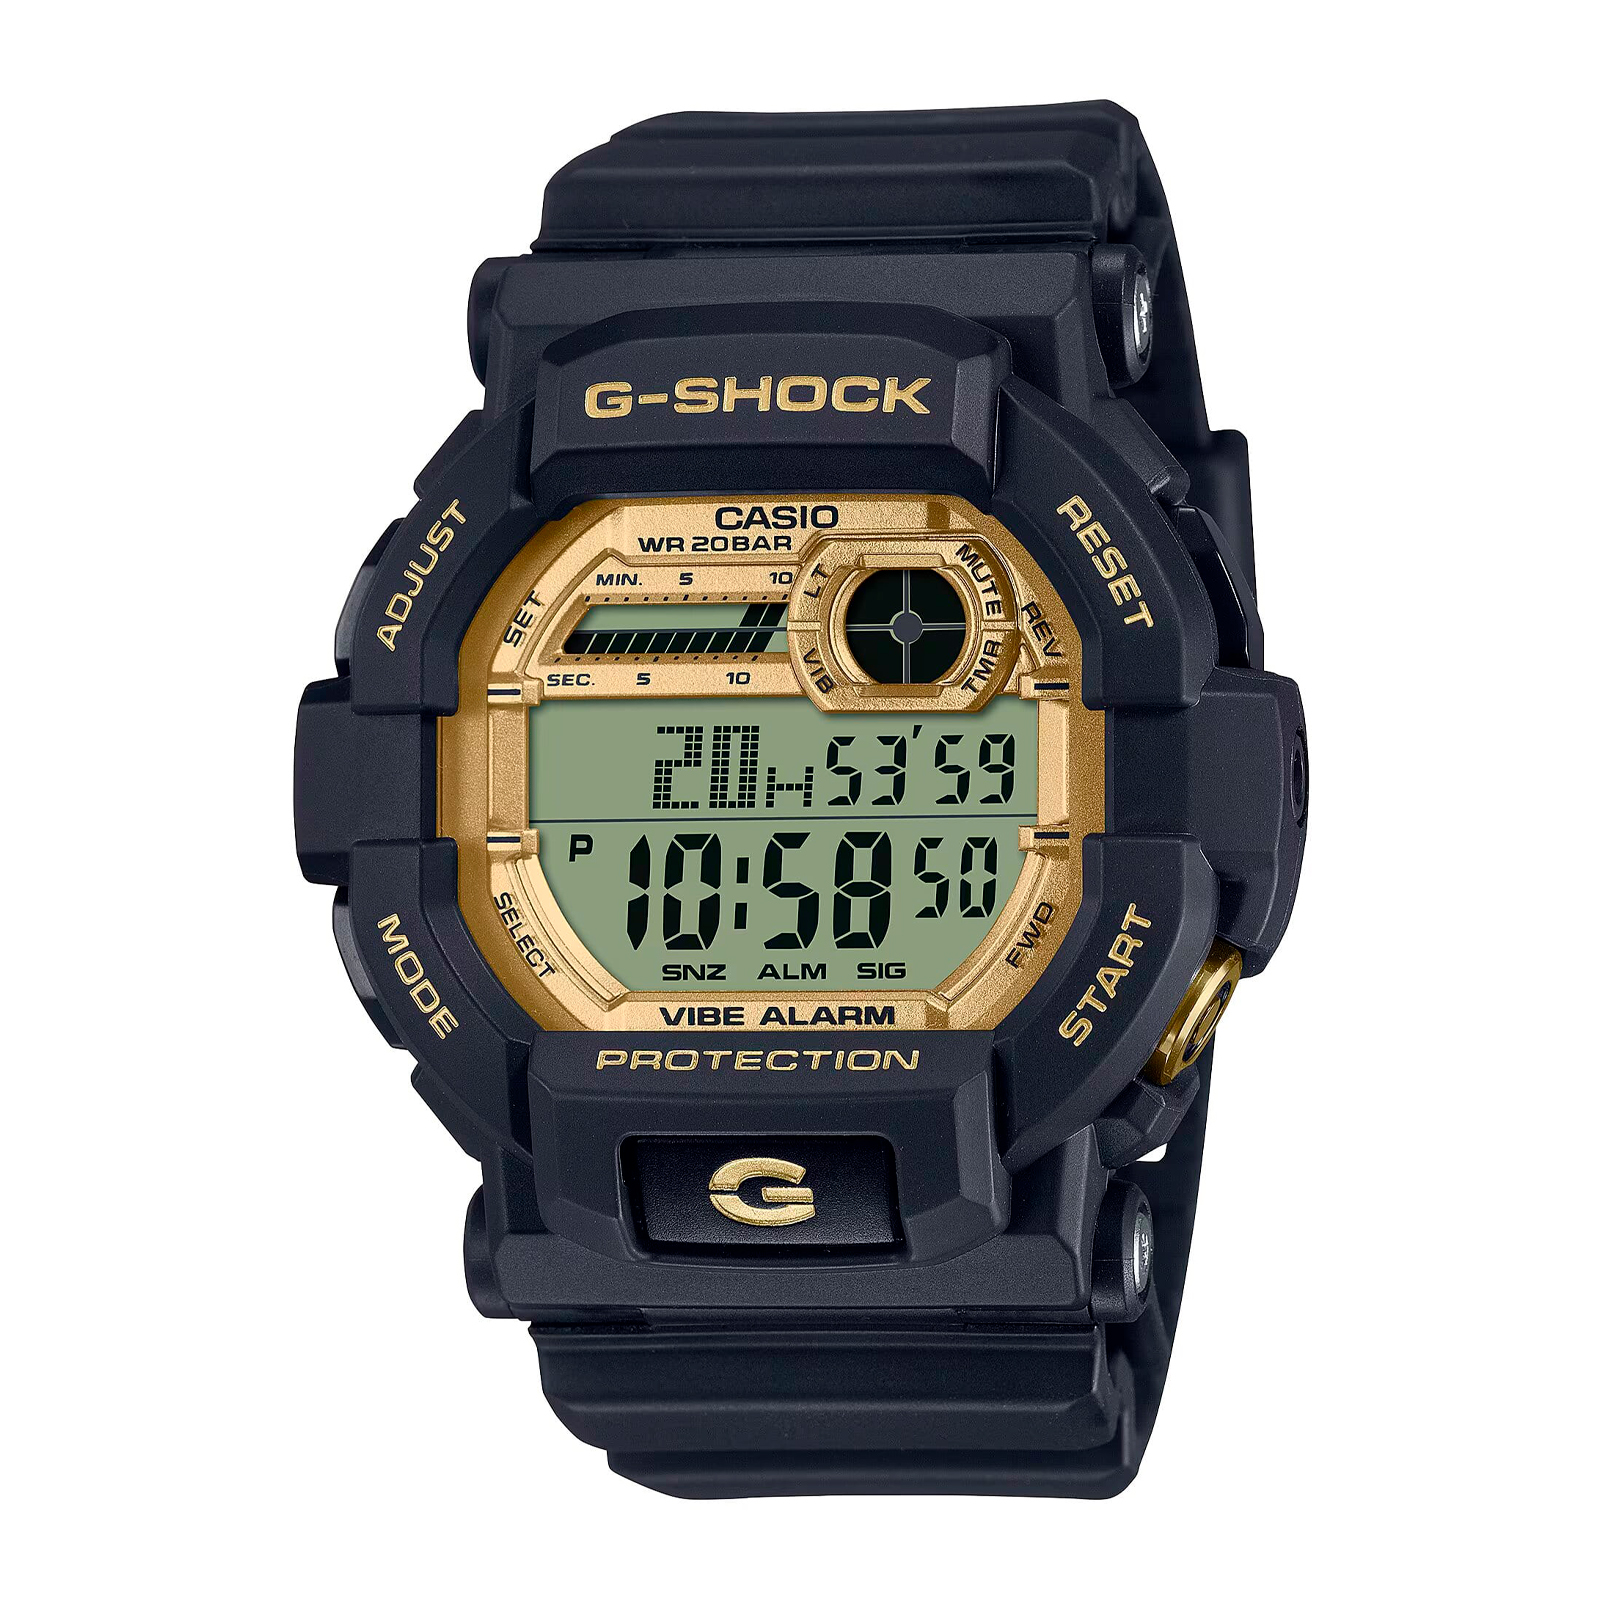 Reloj G-SHOCK GD-350GB-1D Resina Hombre Negro